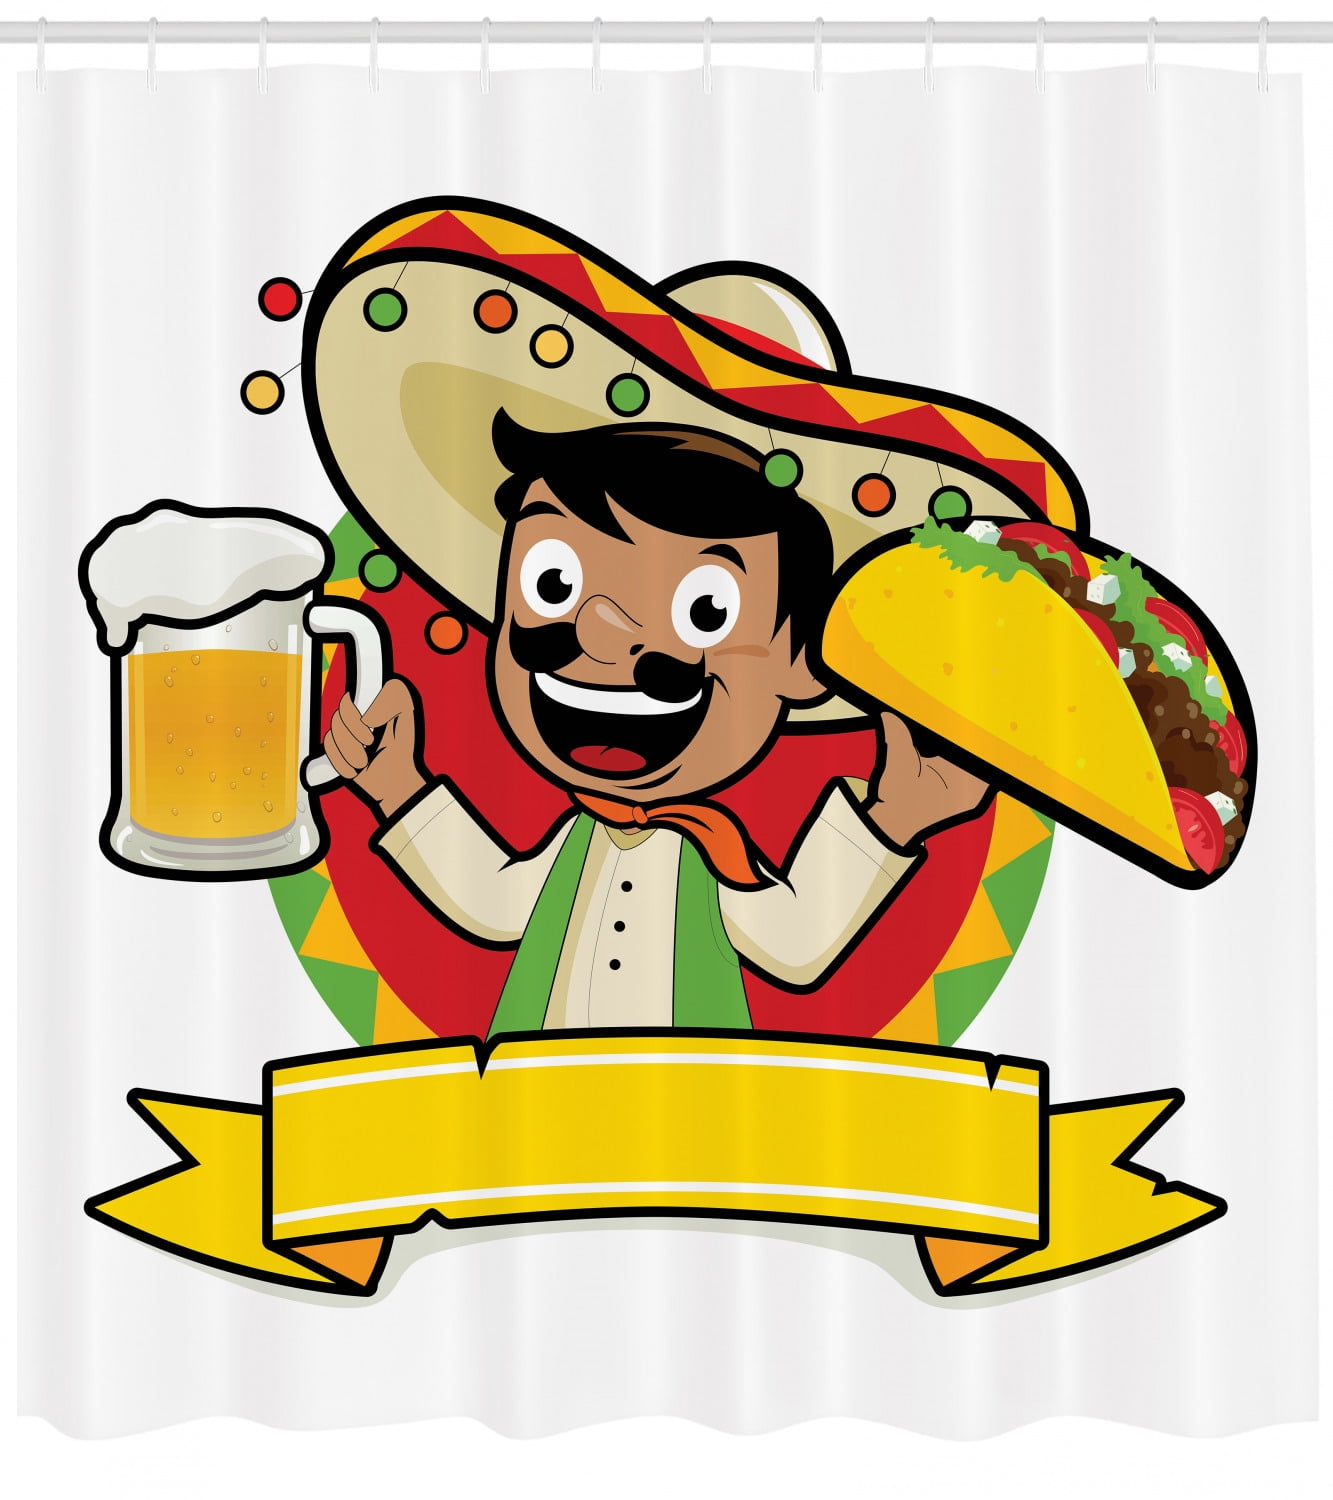 mexican guy in sombrero cartoon